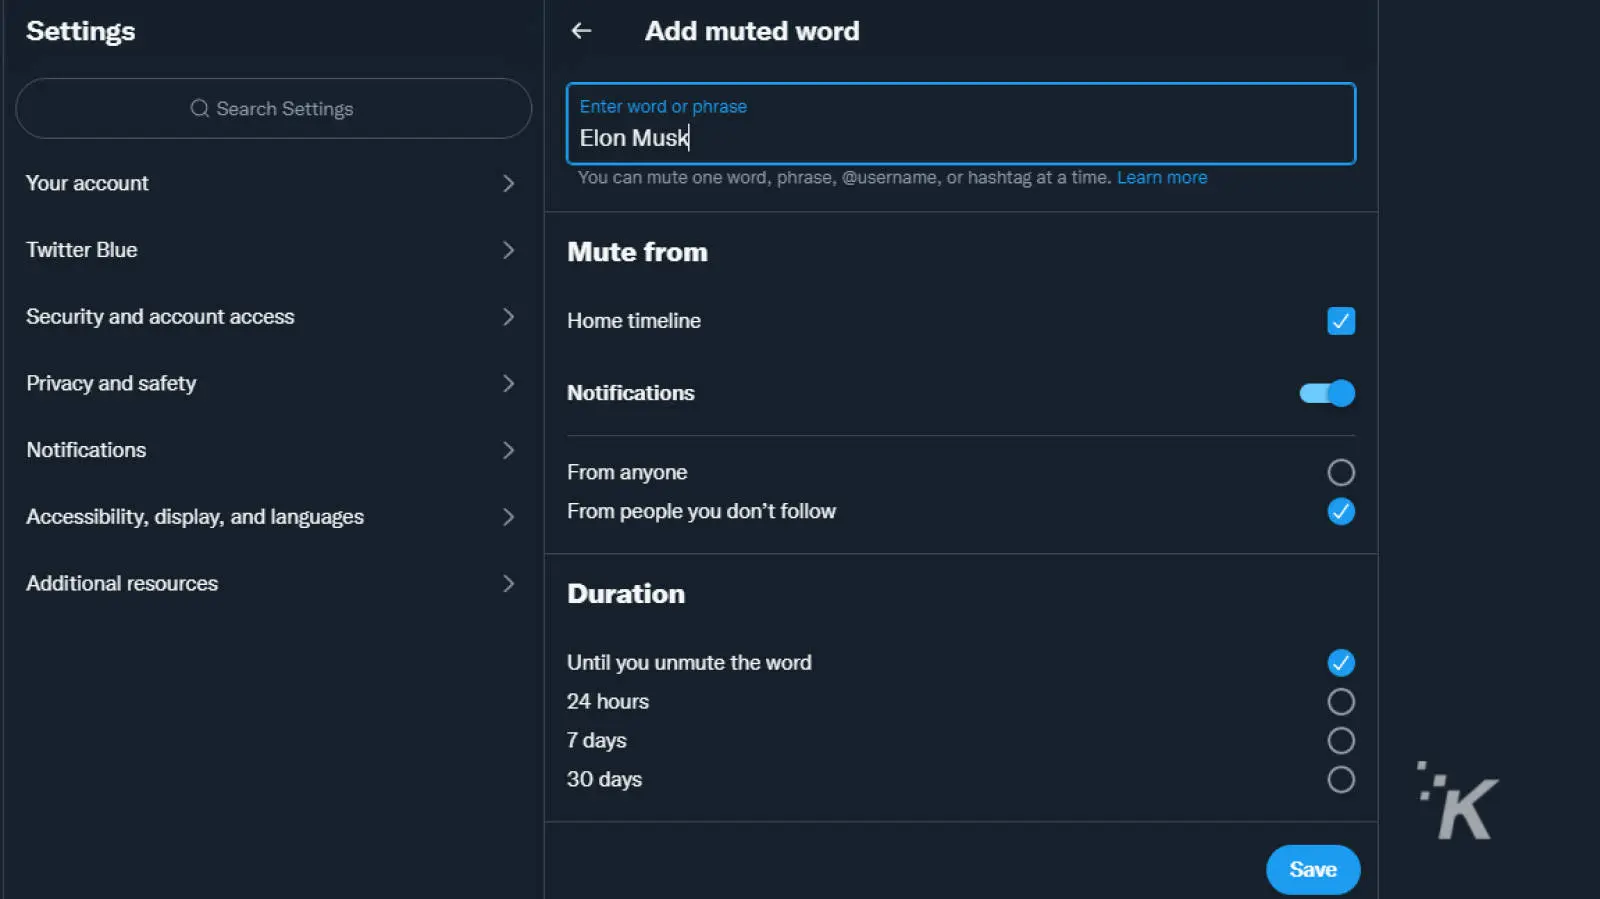 captura de pantalla del sitio web Twitter mostrando el formulario de registro para deshabilitar una palabra, nombre de usuario o hashtag